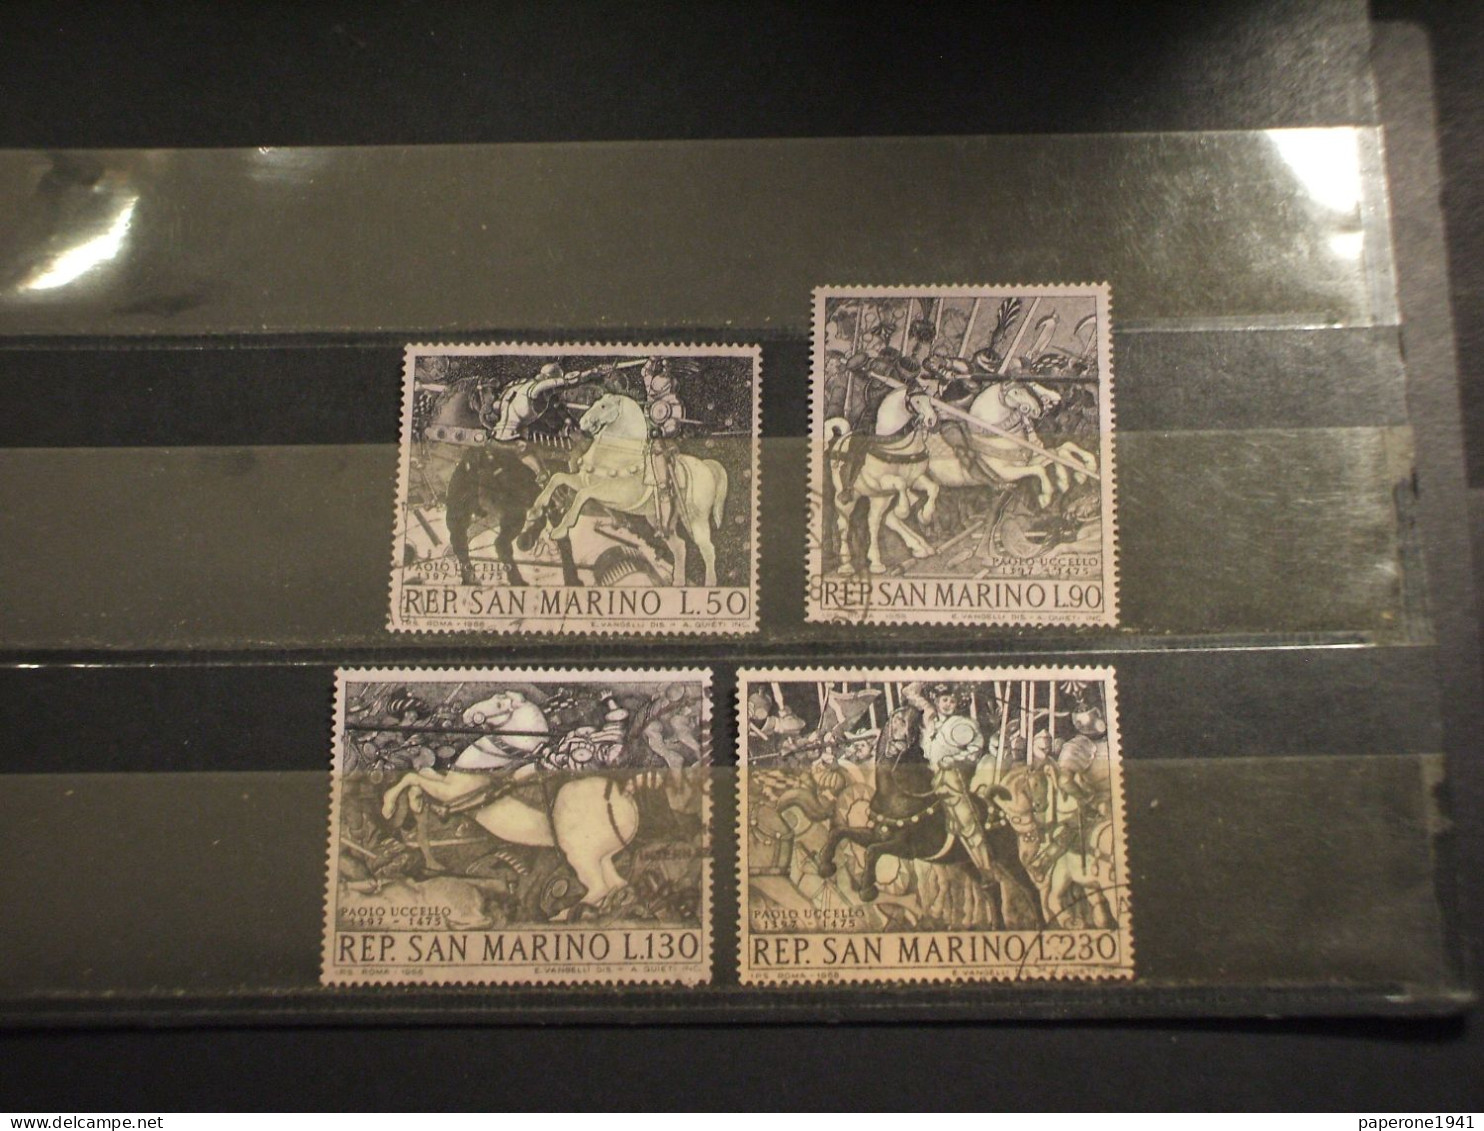 SAN MARINO - 1968 QUADRI DI PAOLO UCCELLO 4 VALORI - TIMBRATI/USED - Used Stamps